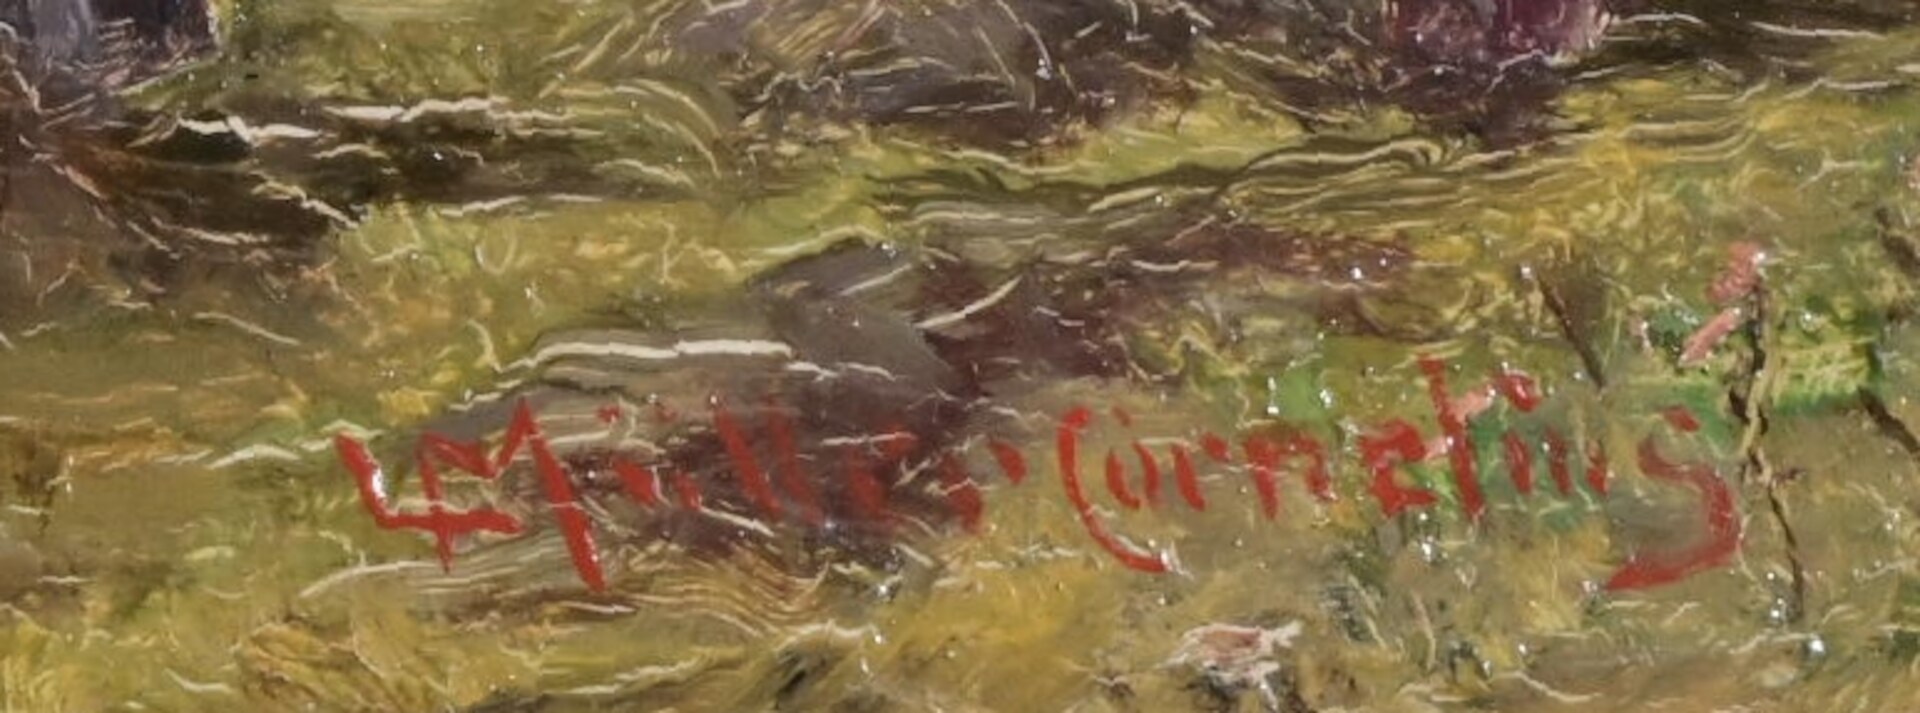 "Heuernte" - kleinformatiges Gemälde, Öl auf Holztafel, ca. 11 x ca. 16,5 cm, unten rechts signiert - Image 7 of 7